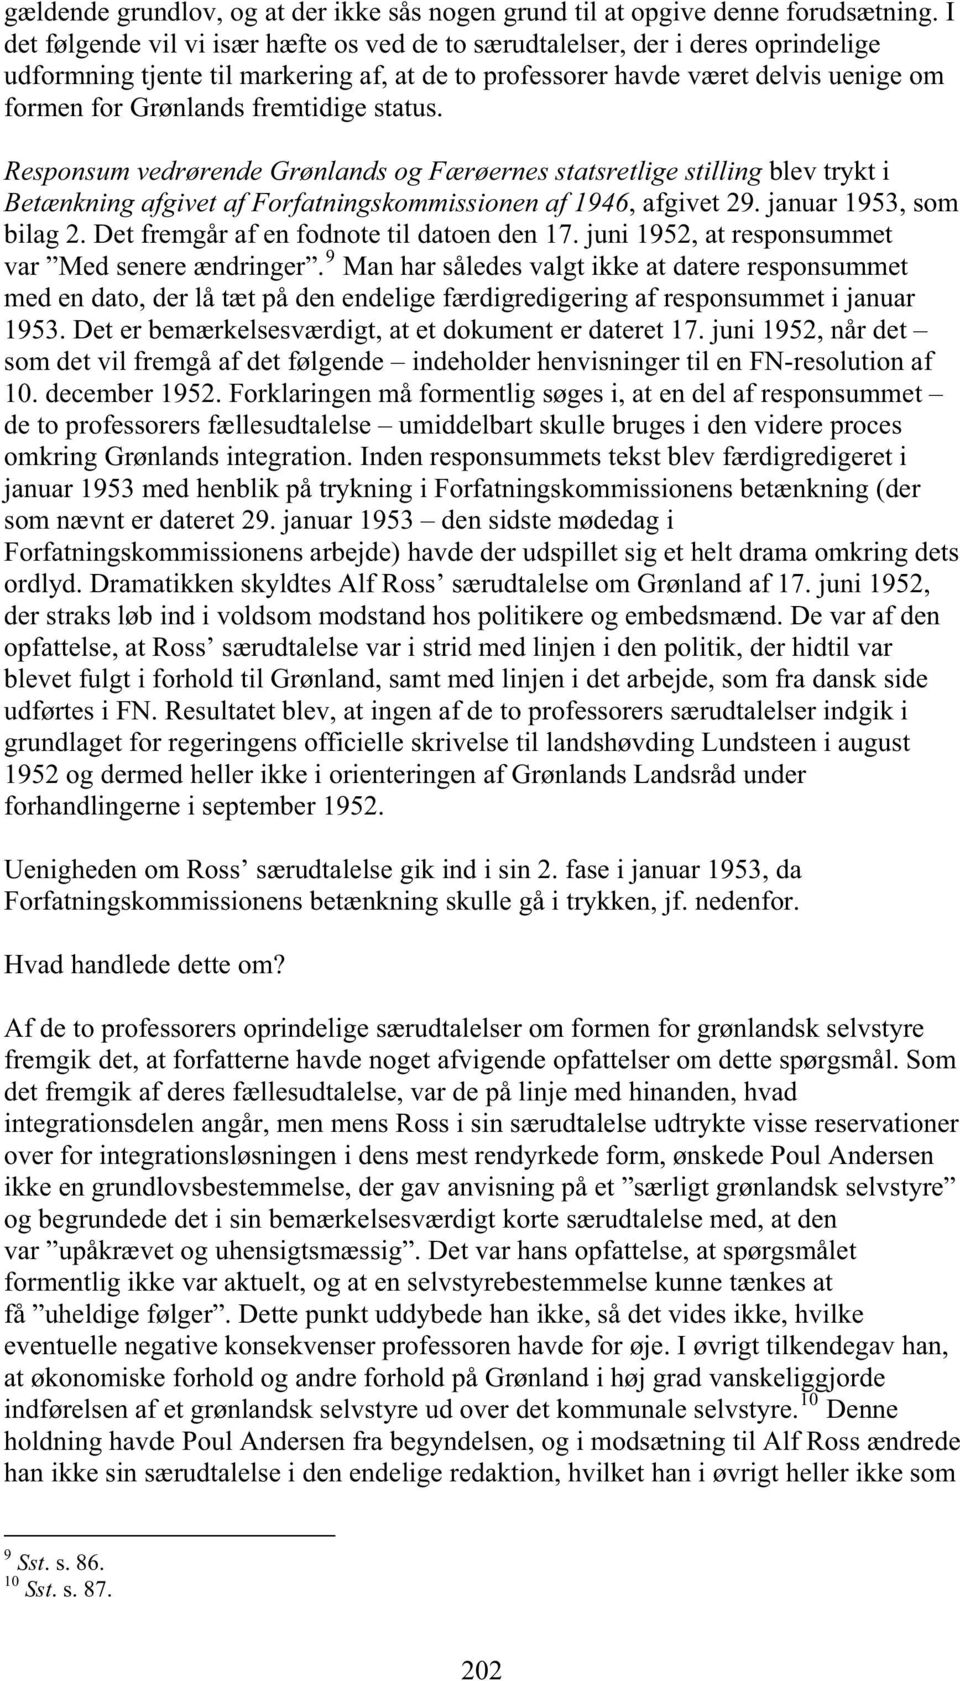 fremtidige status. Responsum vedrørende Grønlands og Færøernes statsretlige stilling blev trykt i Betænkning afgivet af Forfatningskommissionen af 1946, afgivet 29. januar 1953, som bilag 2.